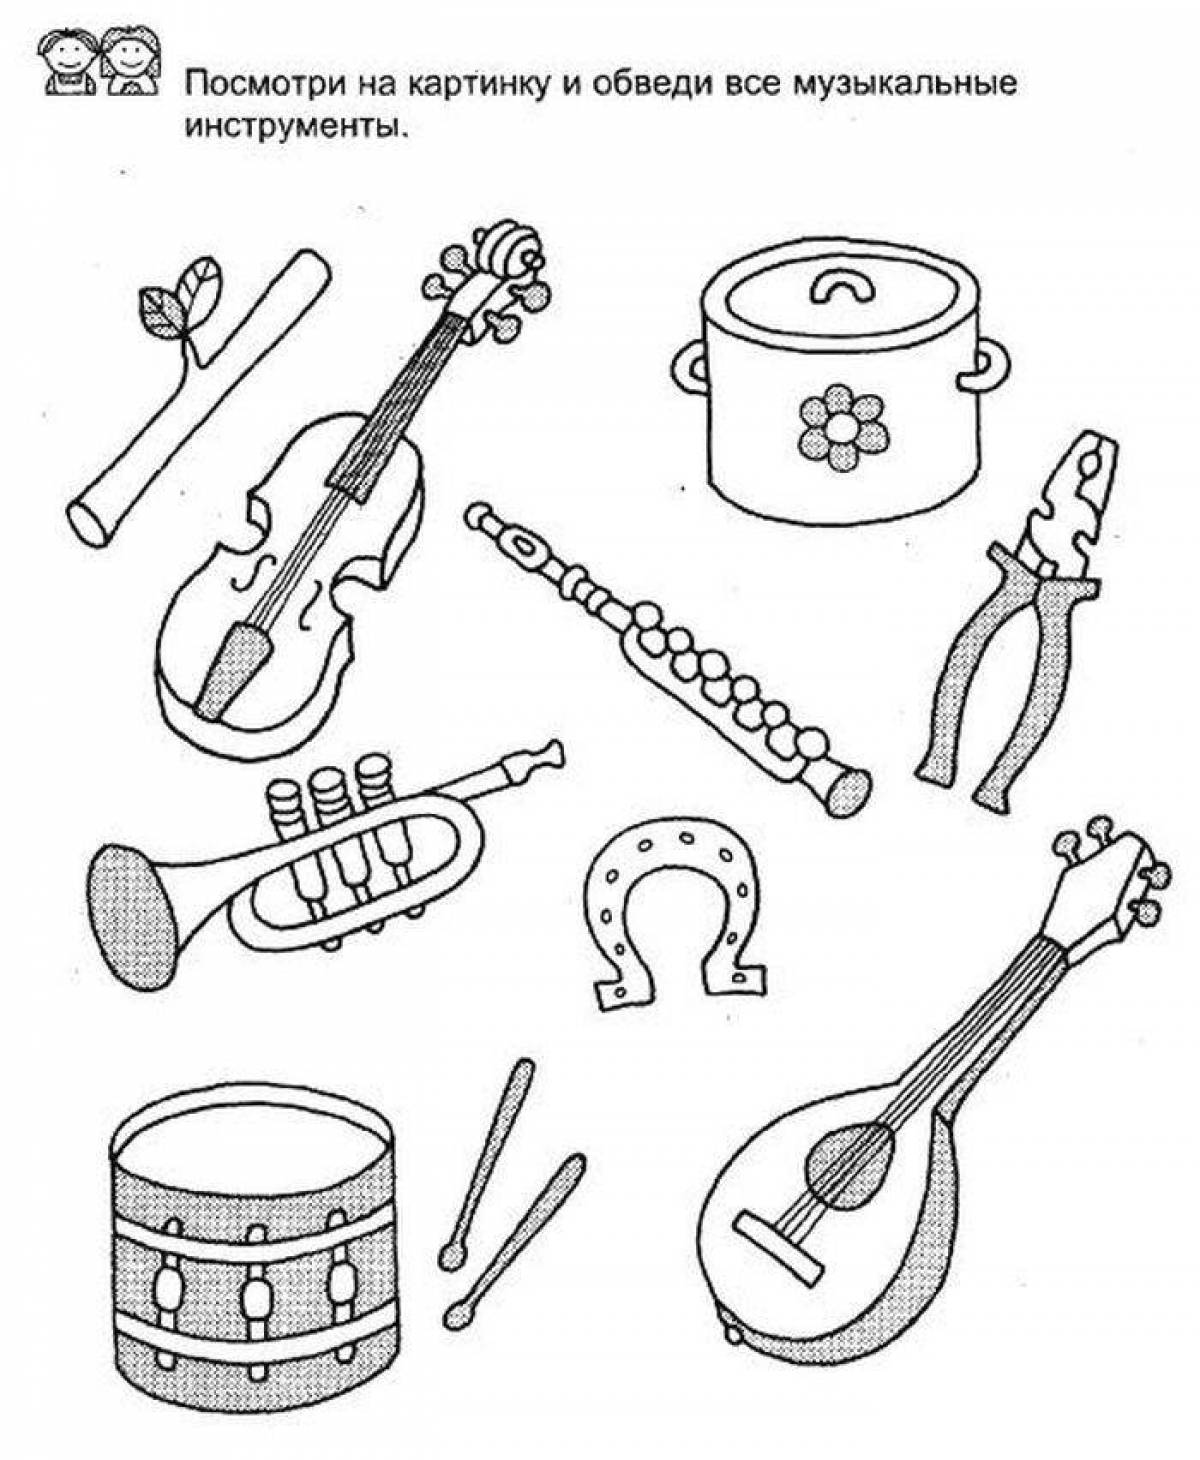 Обучающие музыкальные инструменты. Музыкальные инструменты задания. Музыкальные инструменты задания для детей. Инструменты задания для детей. Муз инструменты задания для дошкольников.